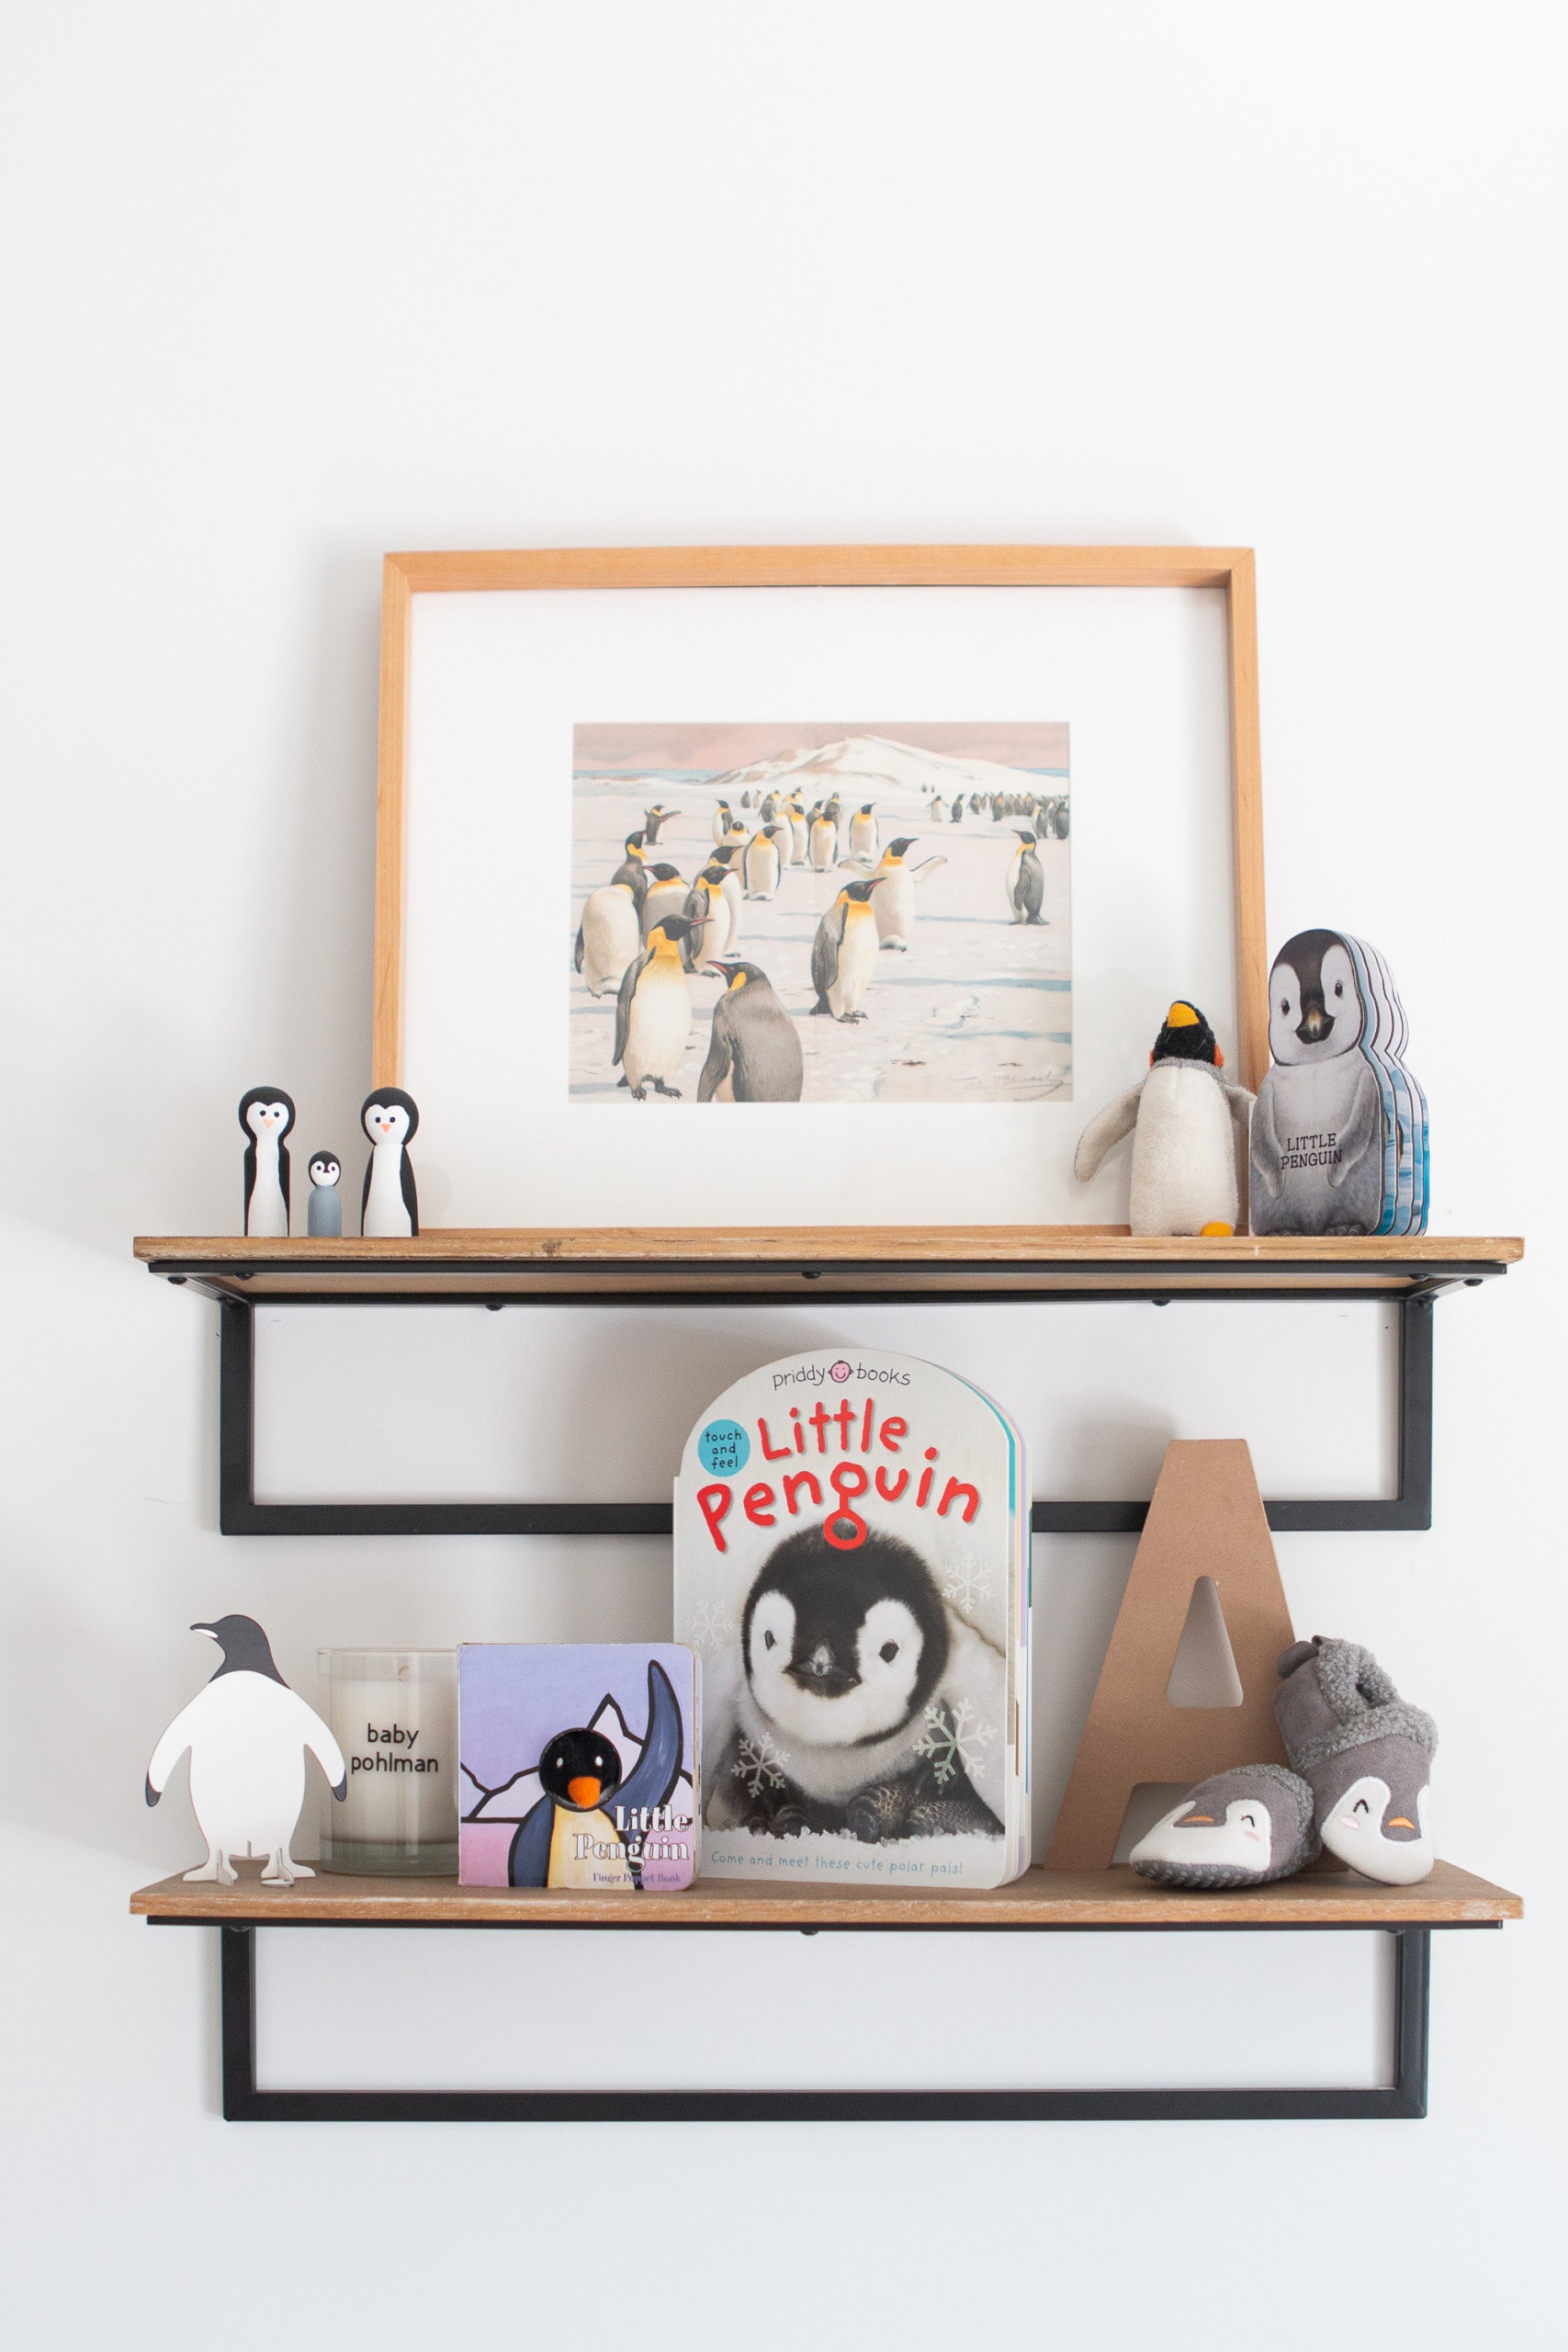 penguin shelf decor in a nursery